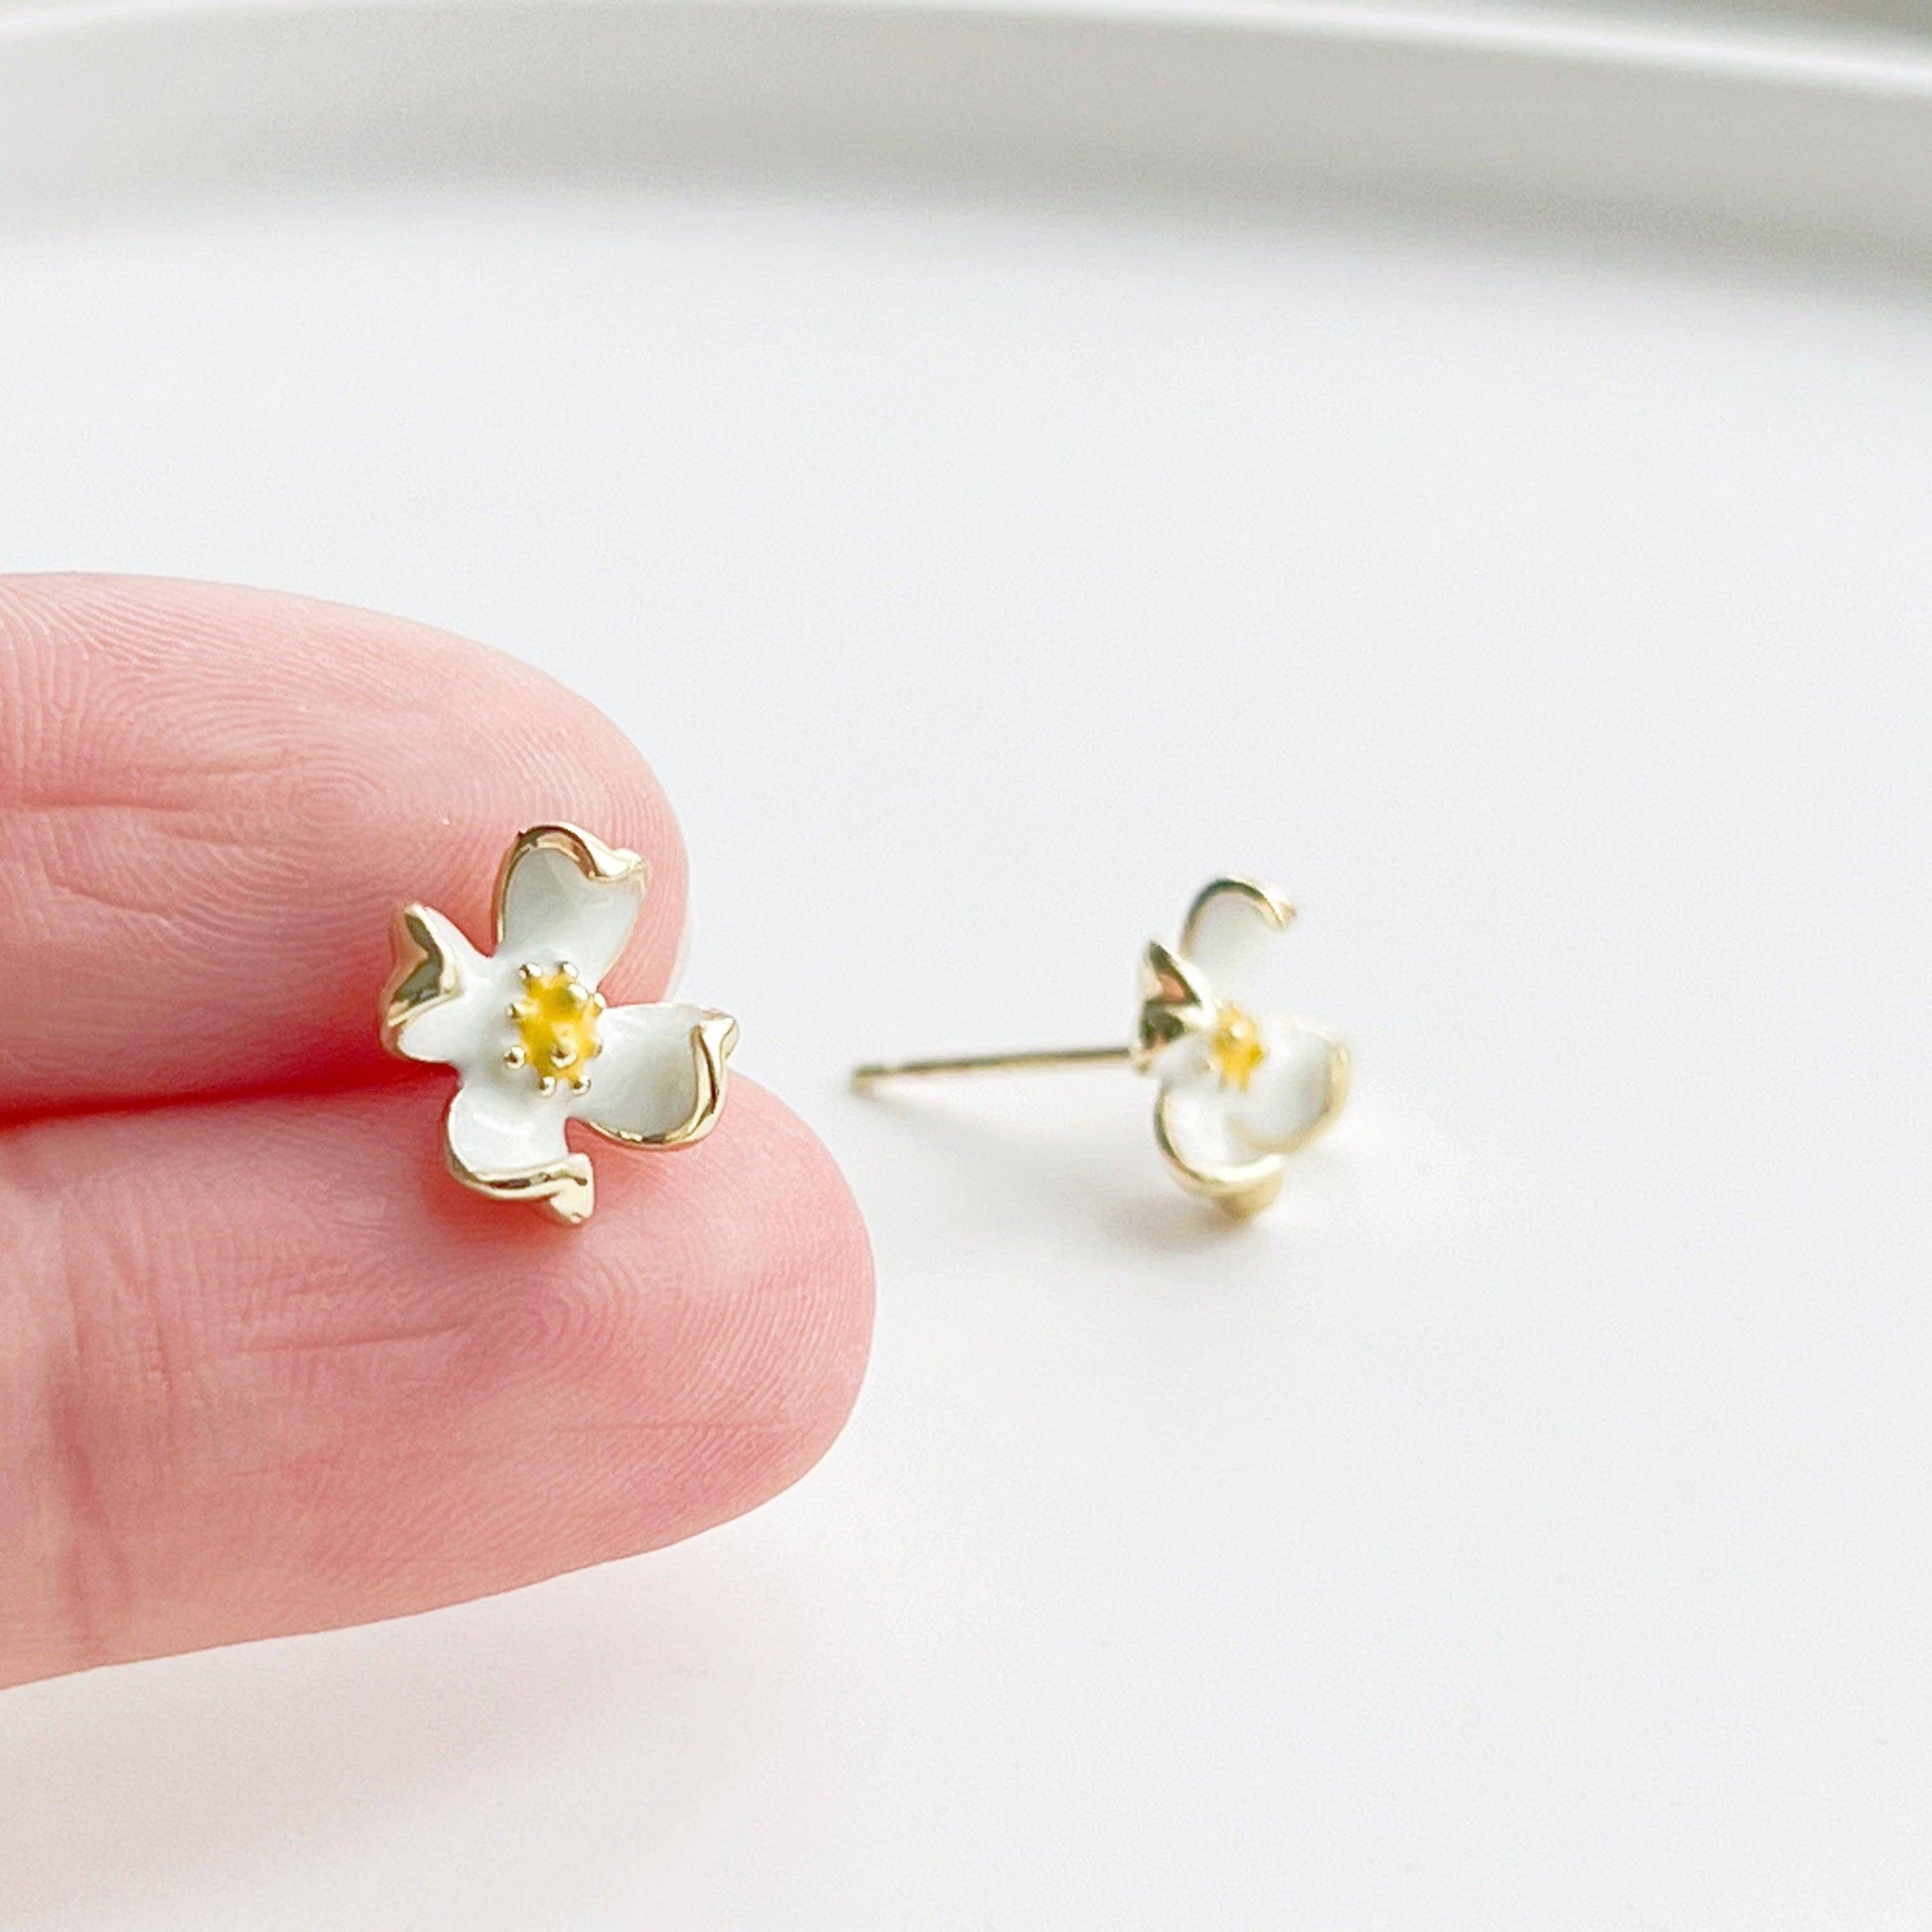 White Dogwood Flower Earrings -  Four Petal Flower Sterling Silver Studs-Ninaouity